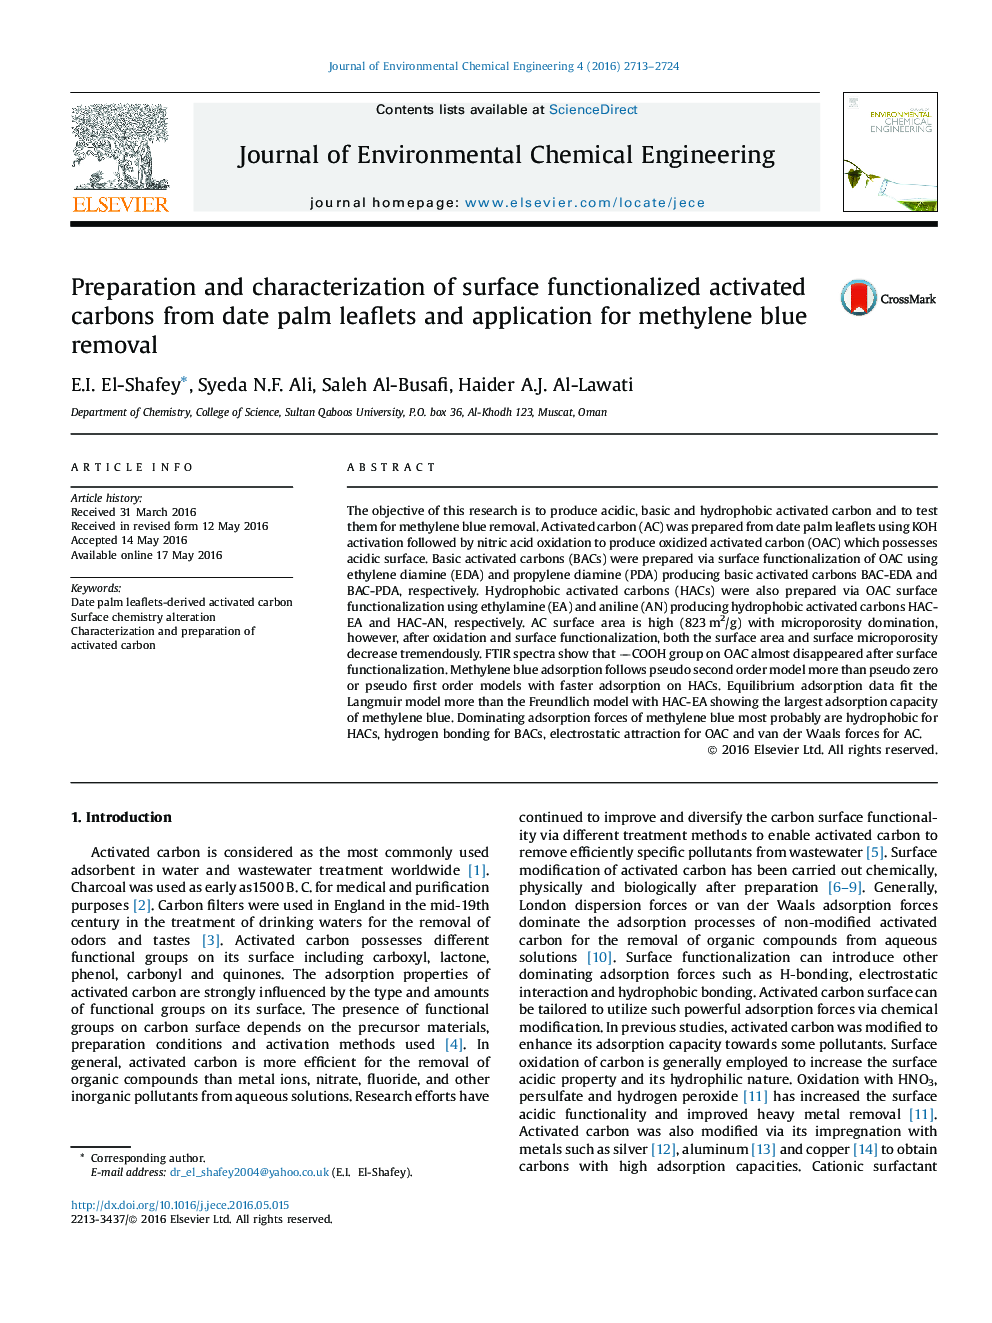 تهیه و بررسی خواص سطح عاملدار کربن فعال از انتاج منشورات خرما و برنامه حذف آبی متیلن 